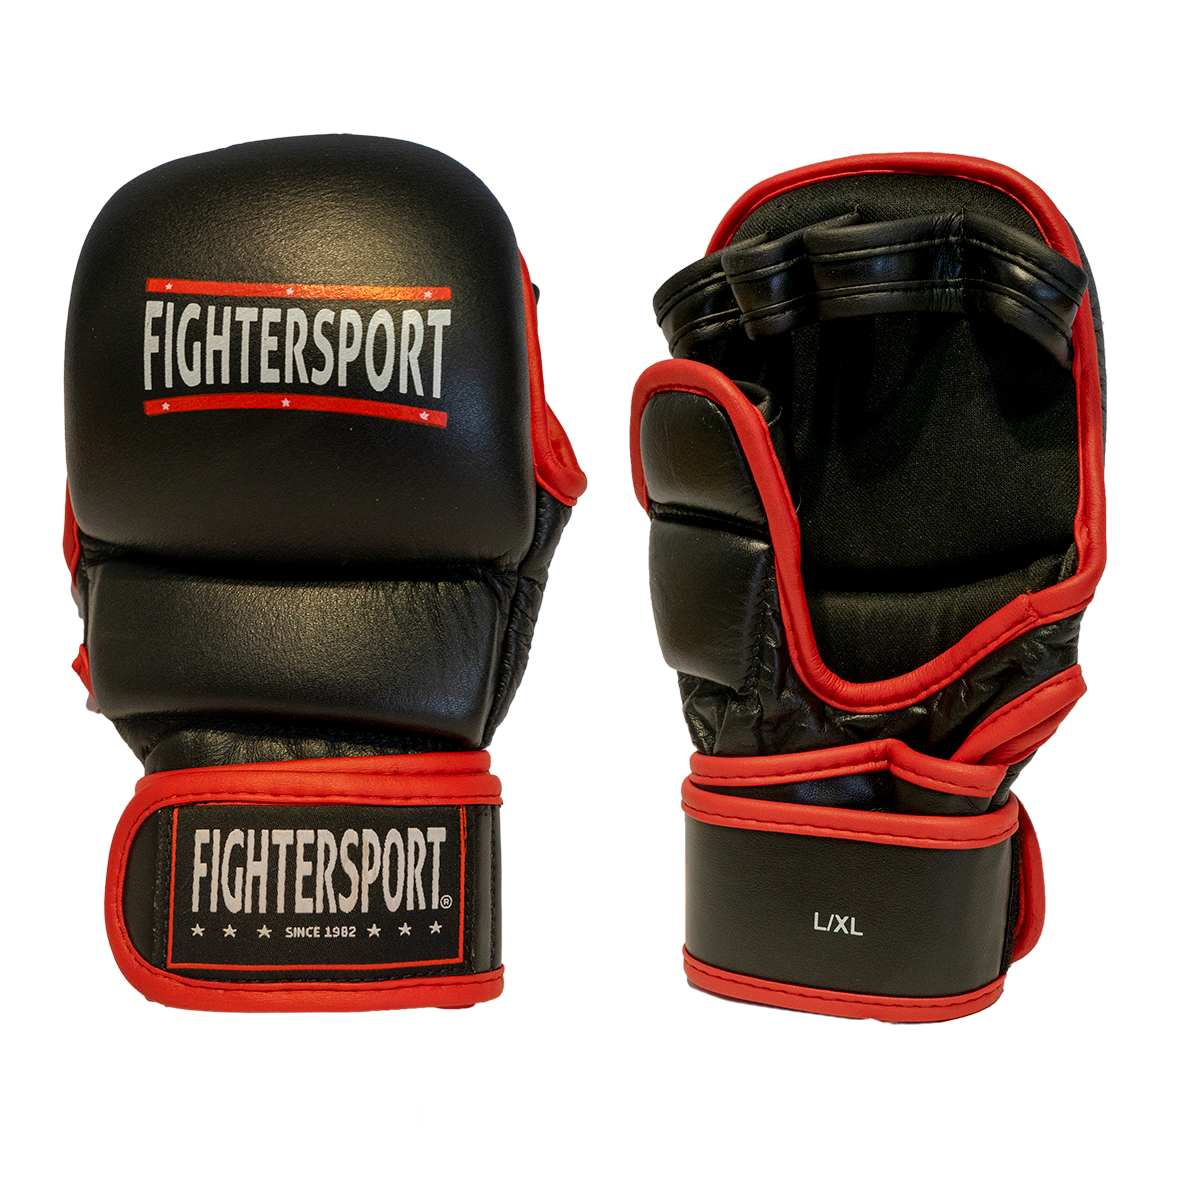 Fightersport handsker 7 oz "Power" - Fightersport